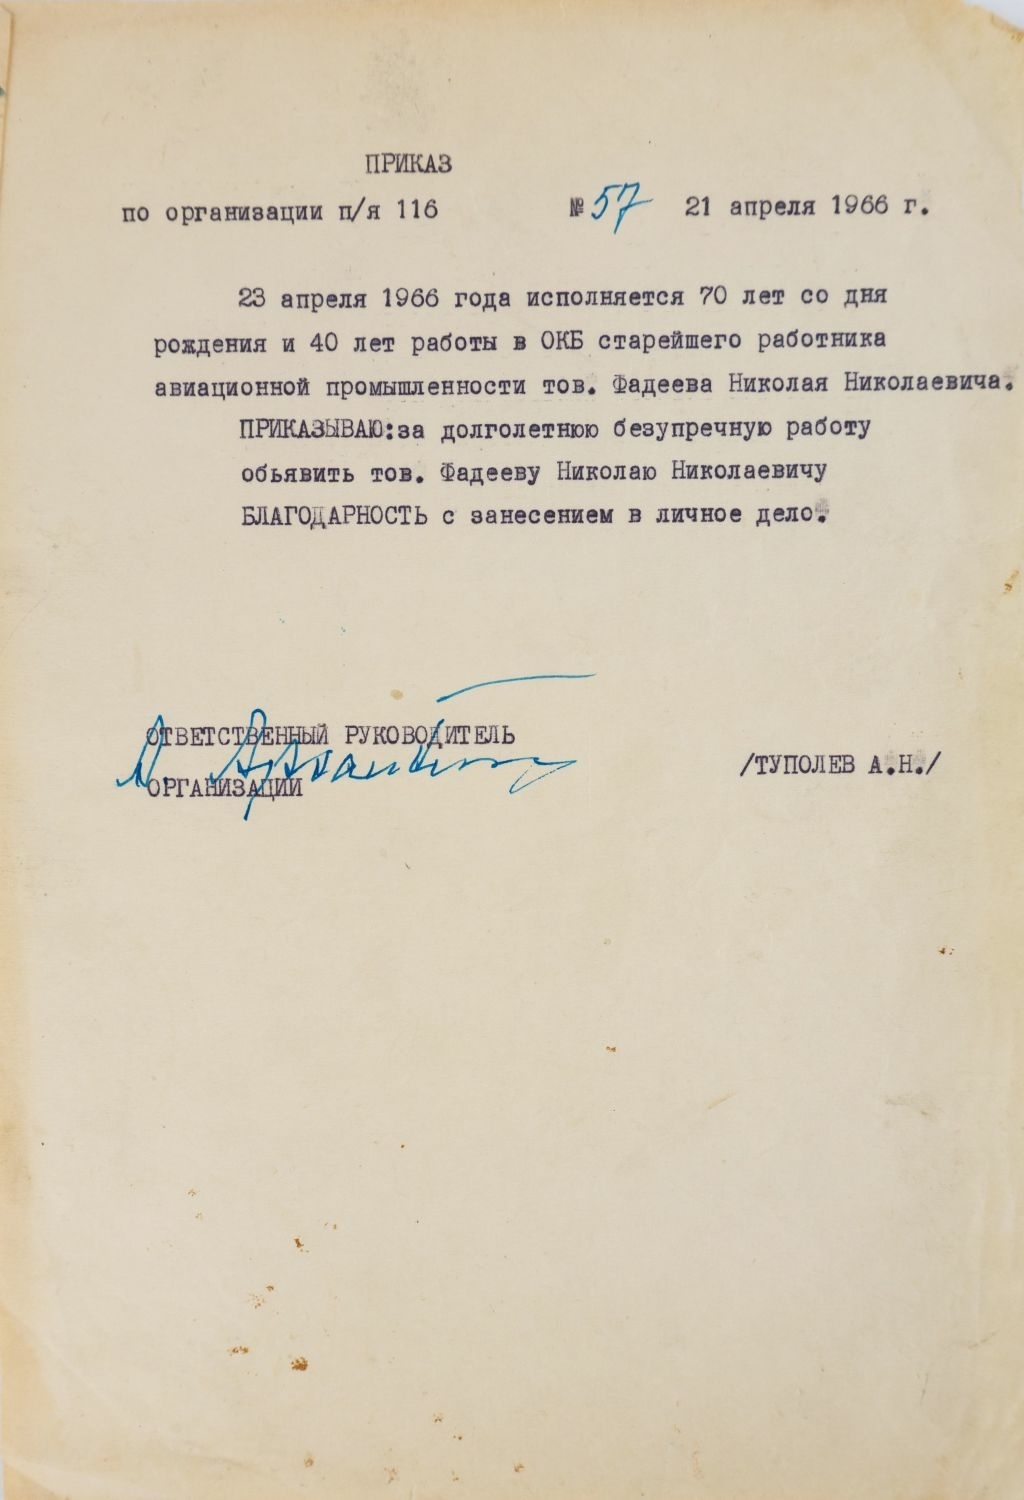 Приказ Андрея Николаевича Туполева о благодарности, объявленной Николаю Николаевичу Фатееву от 21 апреля 1966 года.